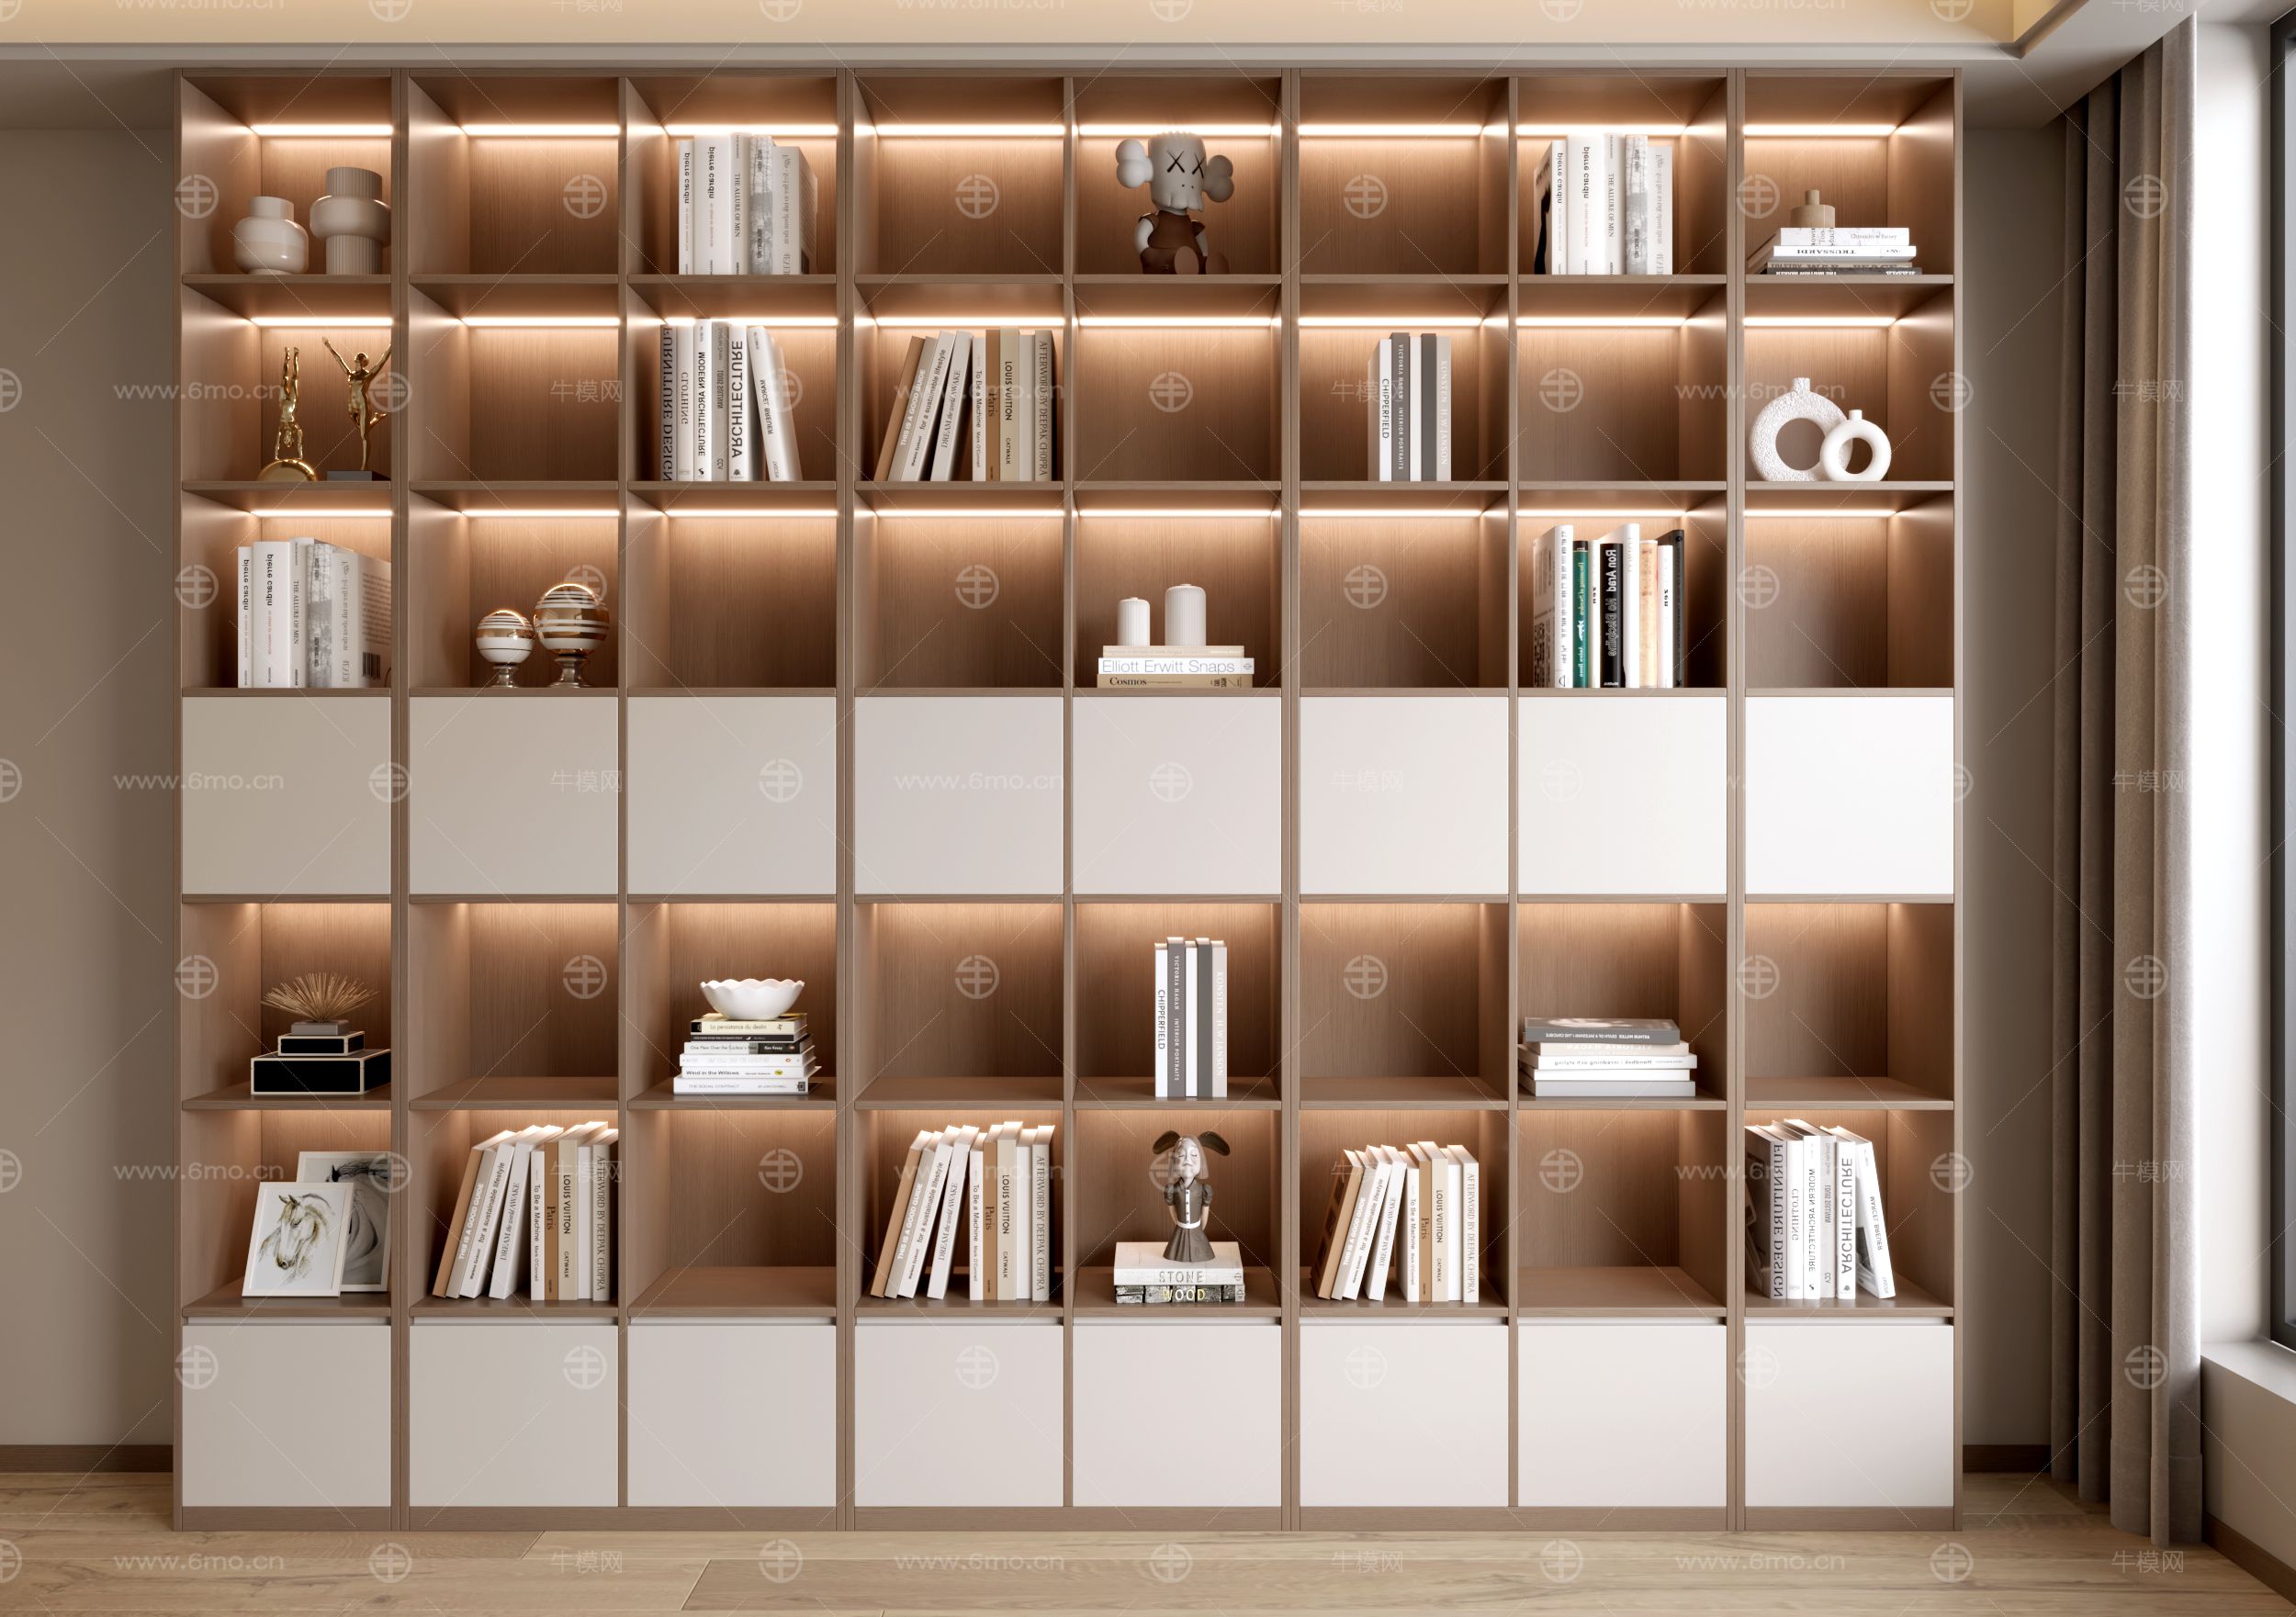 现代书柜 装饰柜 现代书柜 书籍组合 书架 摆件 装饰摆件 开放实木书柜